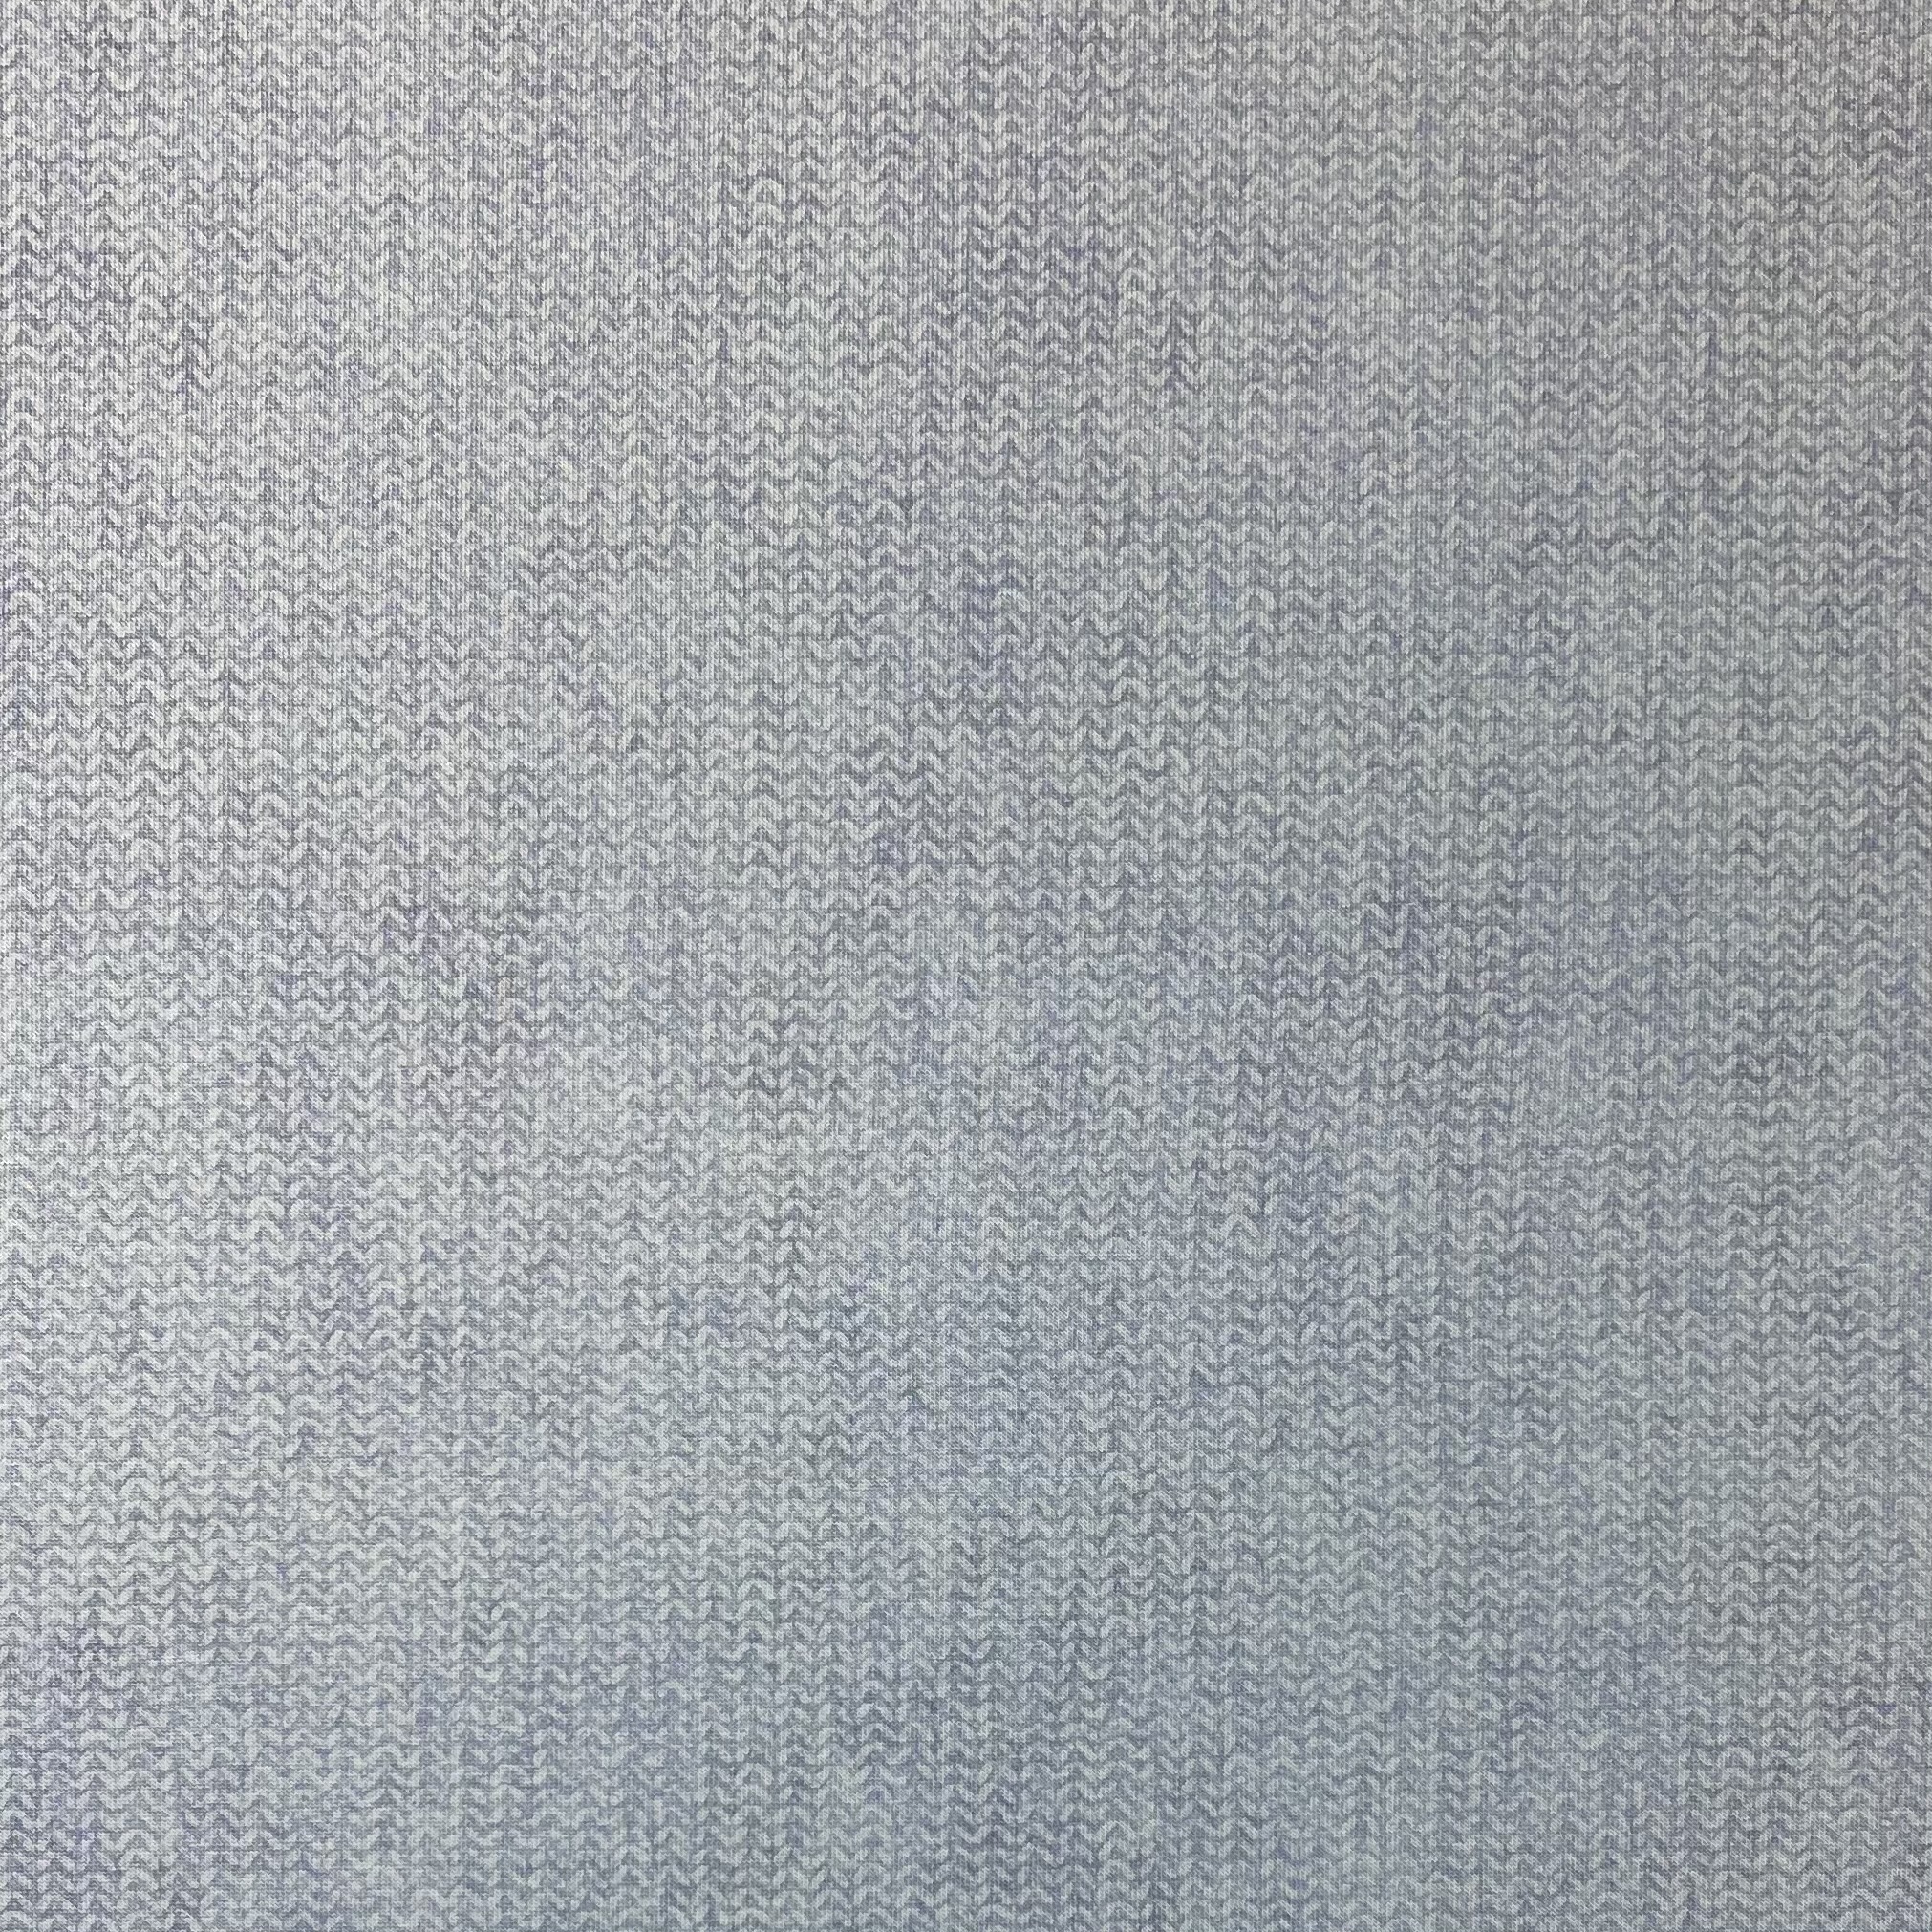 Modalsweat von Lillestoff, grau/blau. Art. 14740